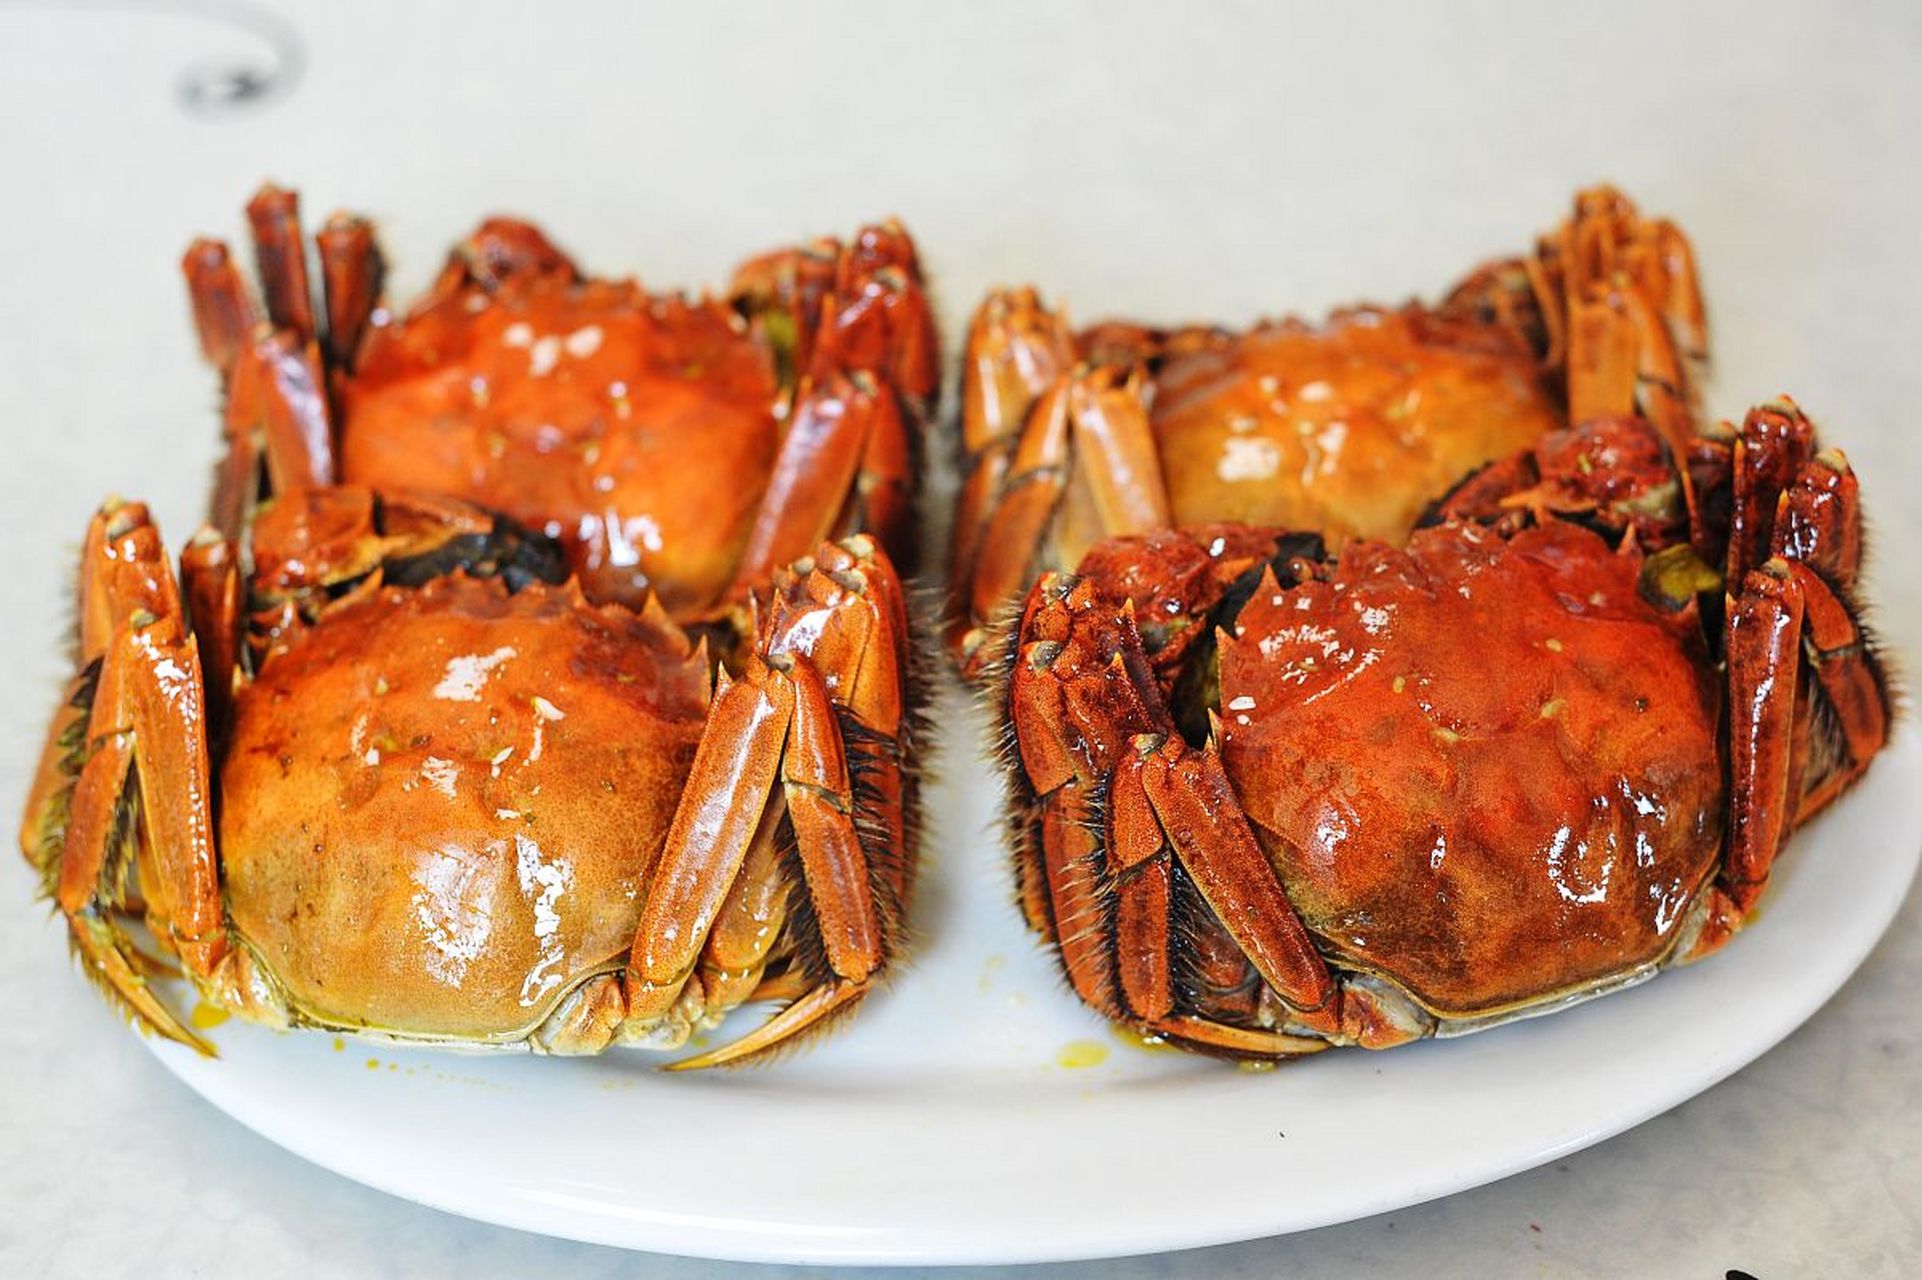 宁河醉蟹是中国宁河地区的一道特色美食,以其独特的口感和美味而闻名